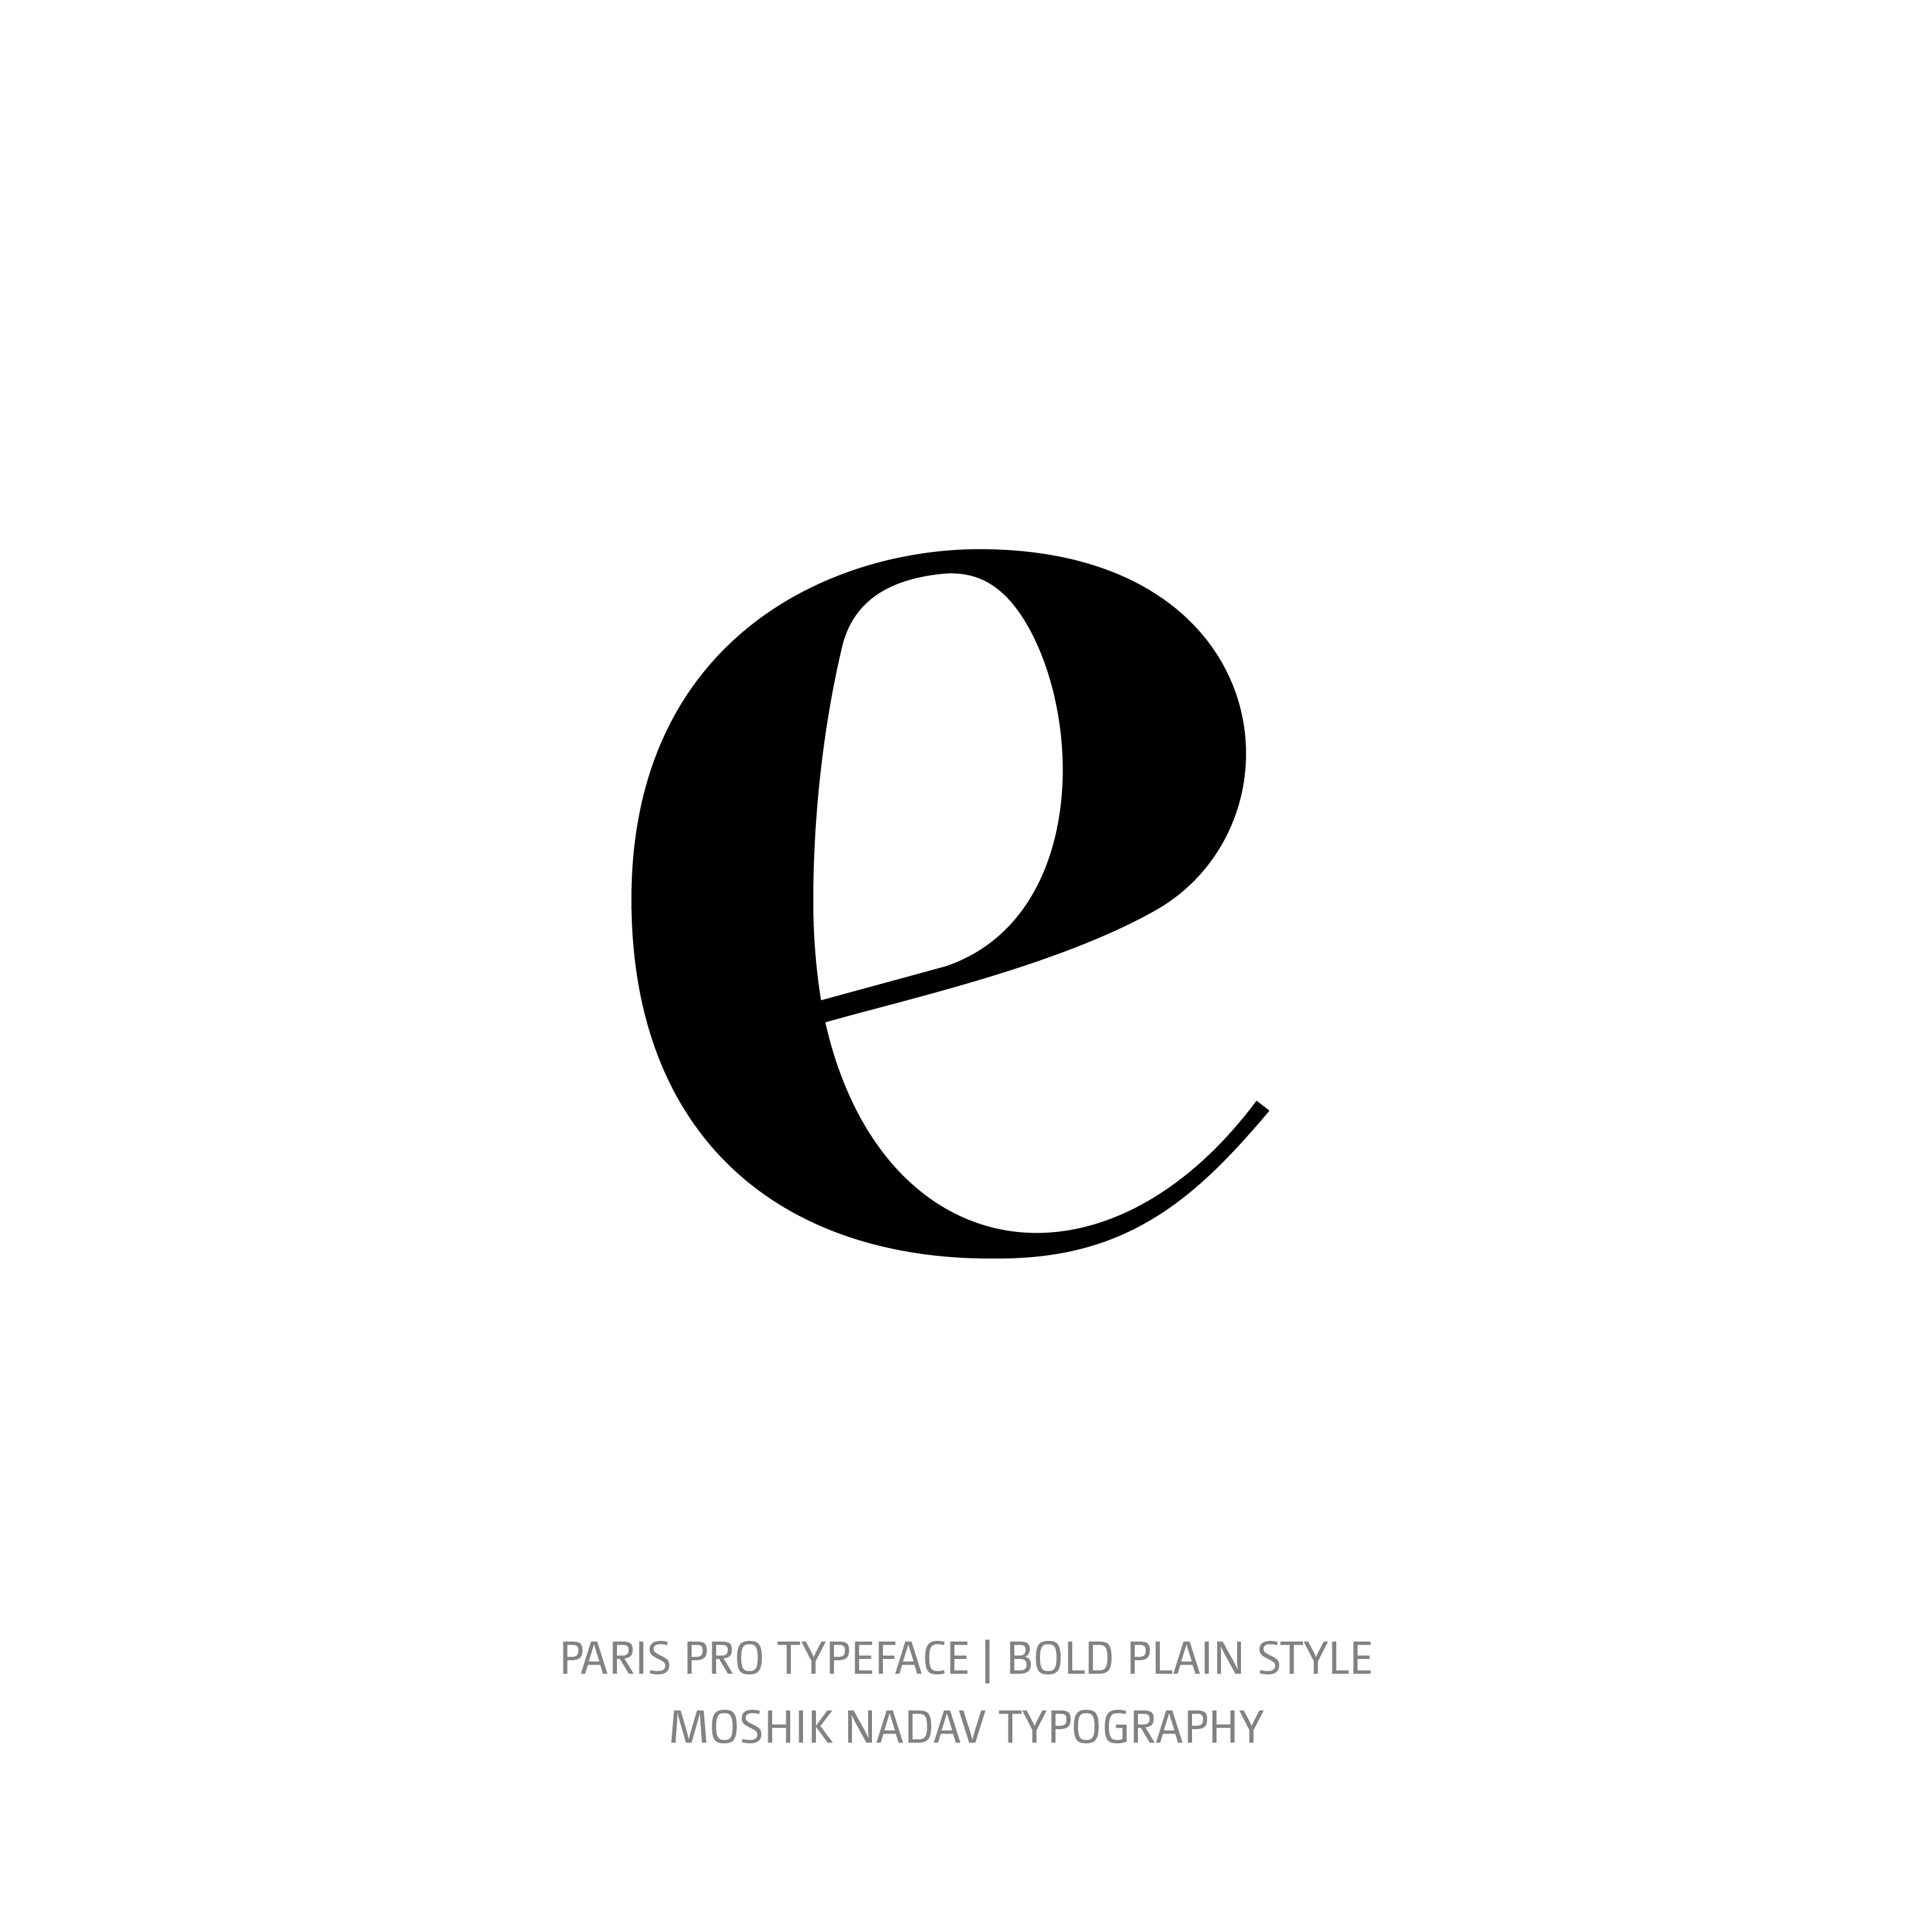 Paris Pro Typeface Bold Plain e